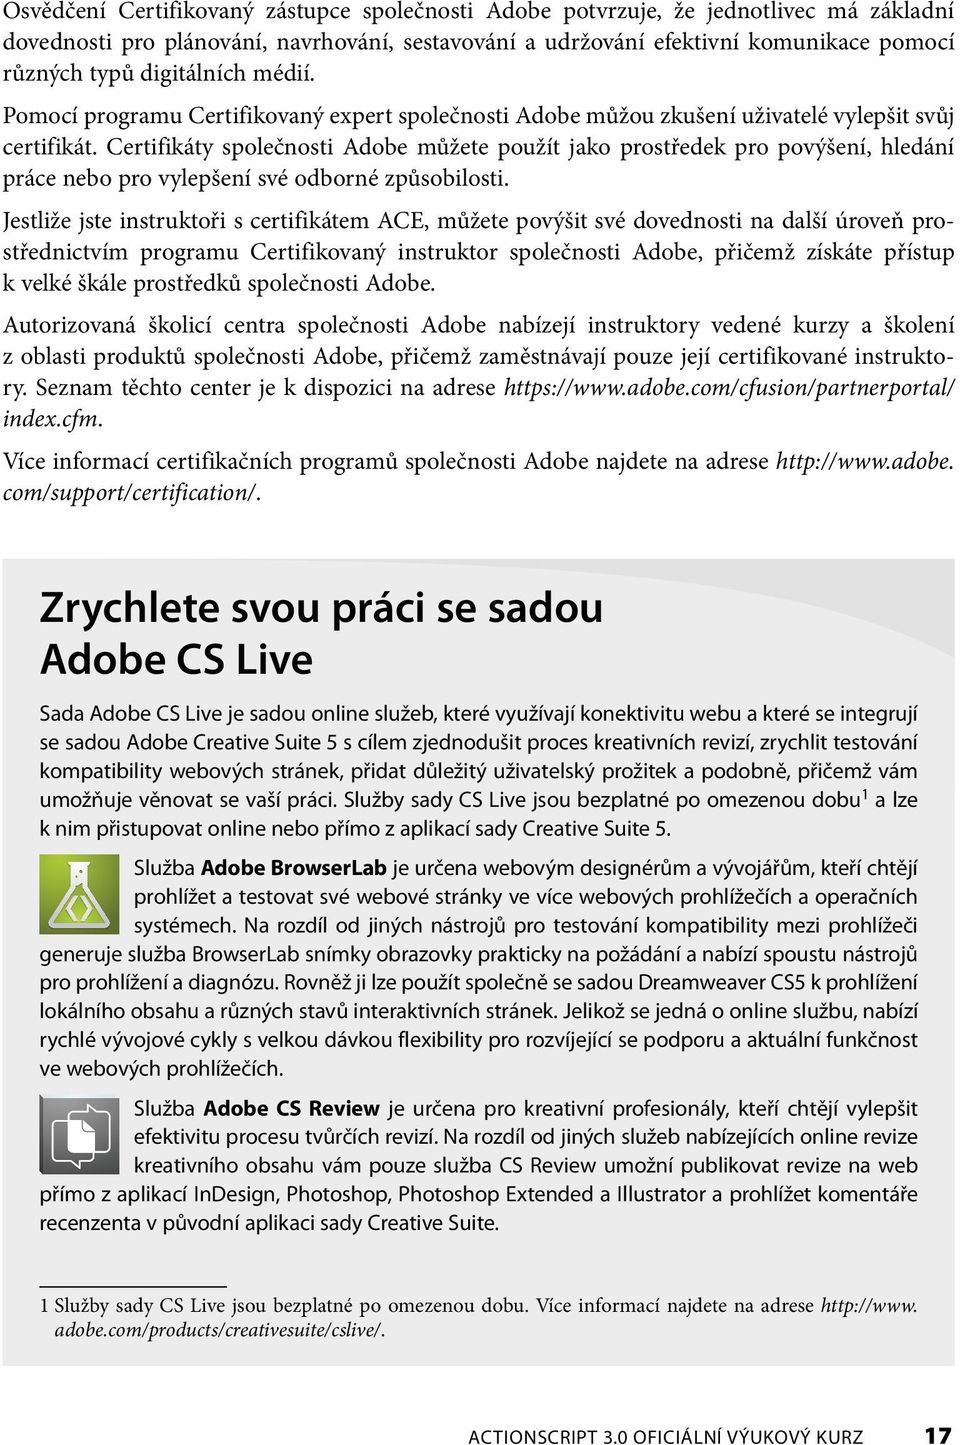 Certifikáty společnosti Adobe můžete použít jako prostředek pro povýšení, hledání práce nebo pro vylepšení své odborné způsobilosti.